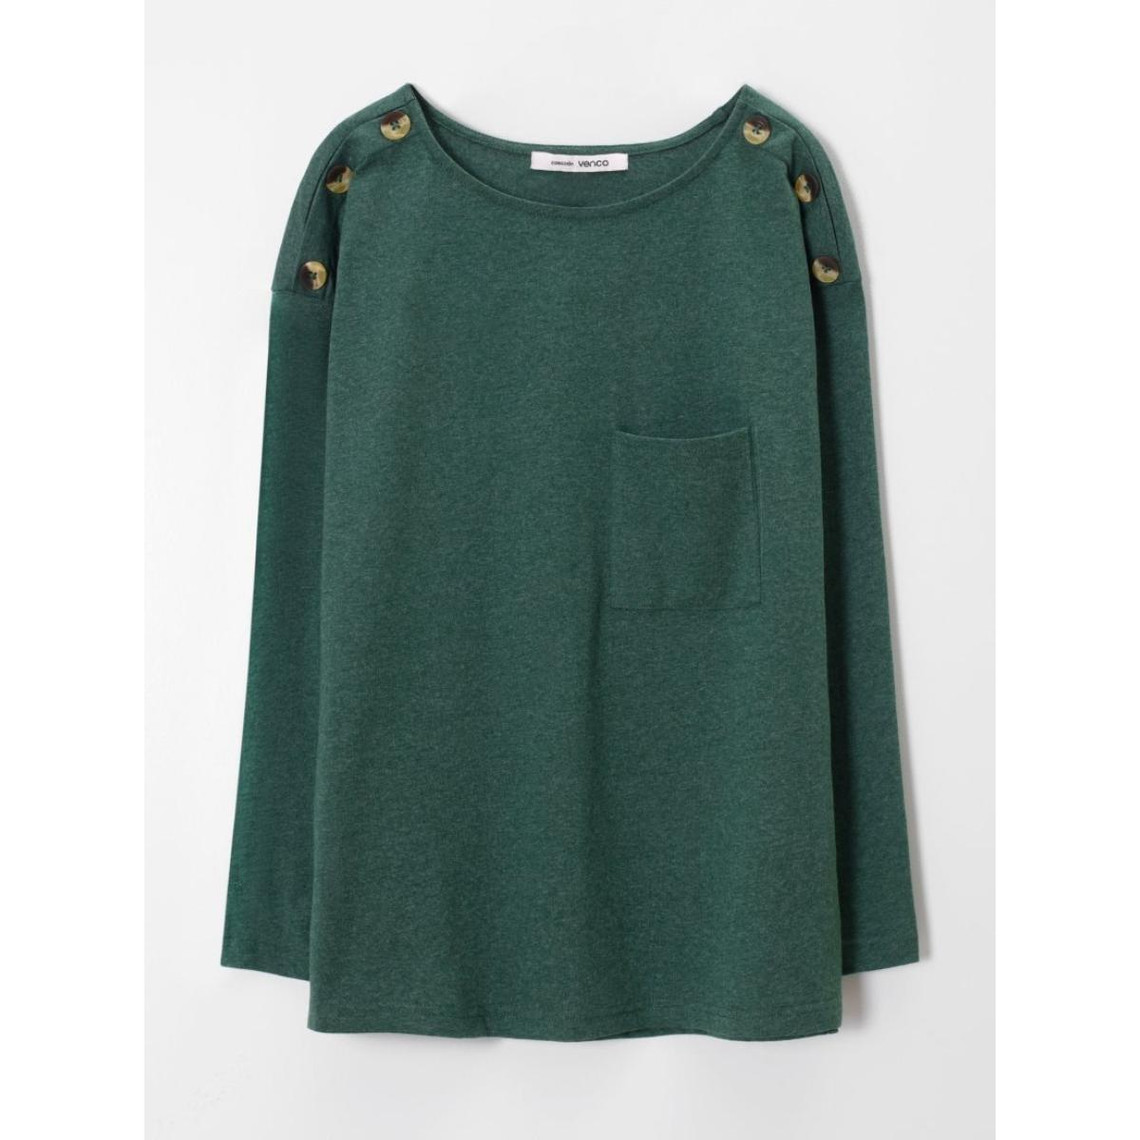 t-shirt à manches longues avec boutons sur les épaules - vert en coton